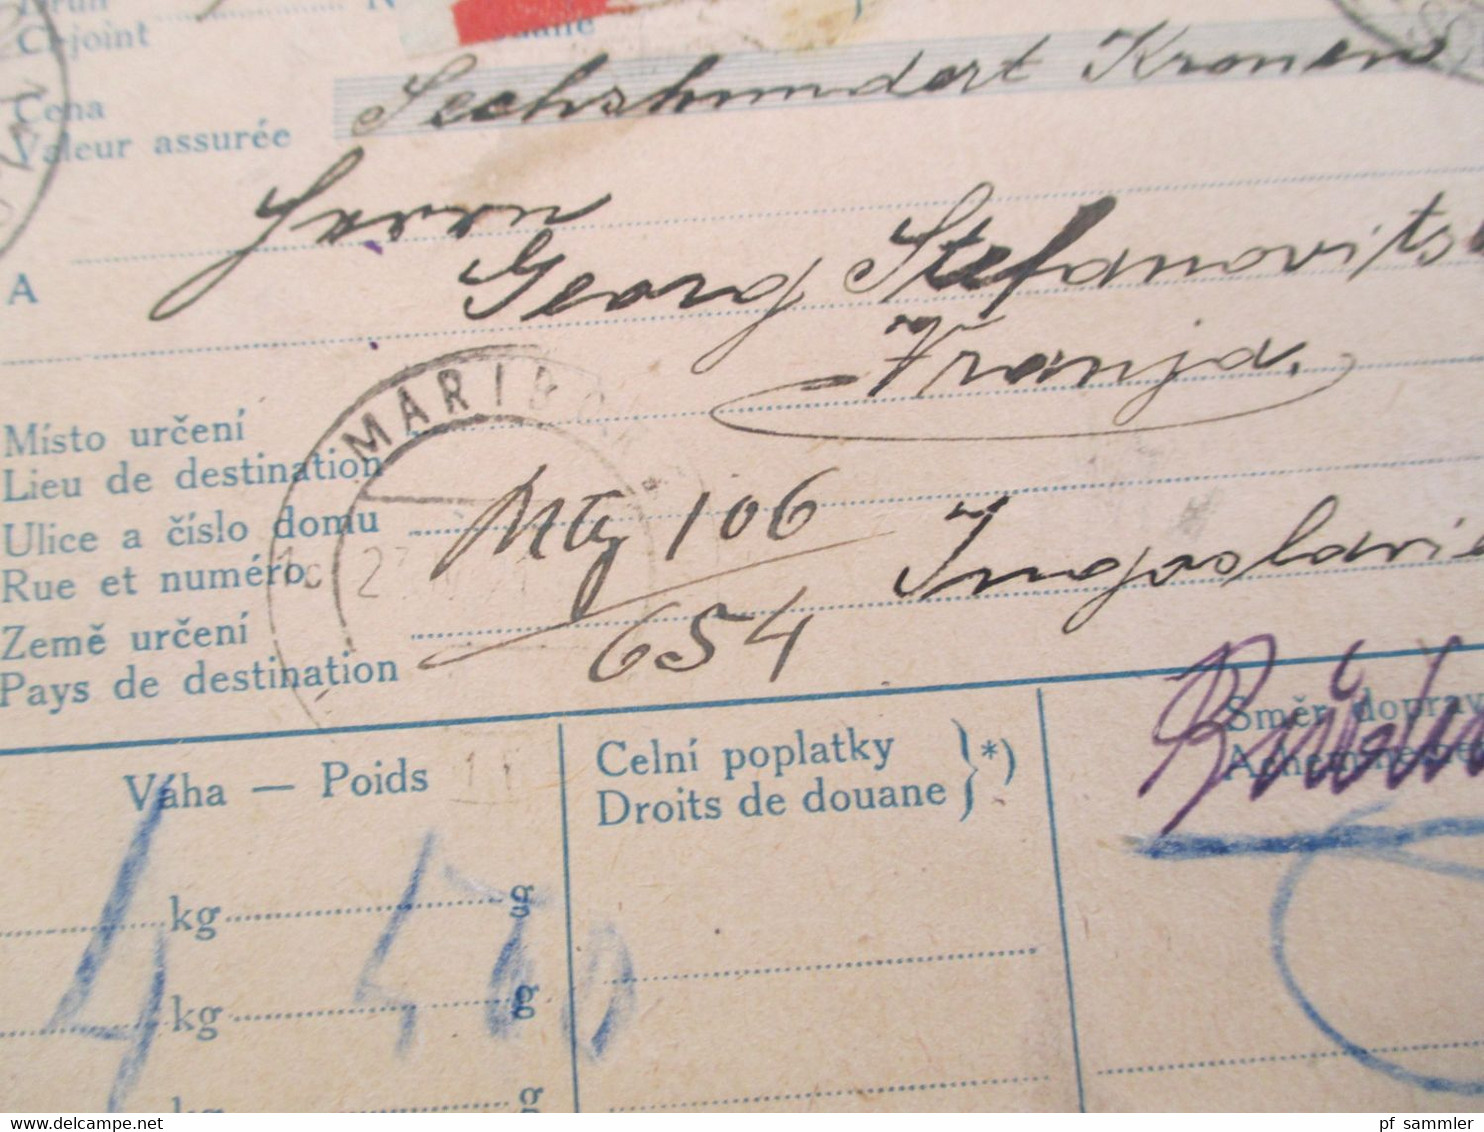 CSSR 1921 Hradschin Mucha Wert - Paketkarte Teplice Teplitz Schönau Sudetenland - Vranja mit Steuermarke und vielen Stp.